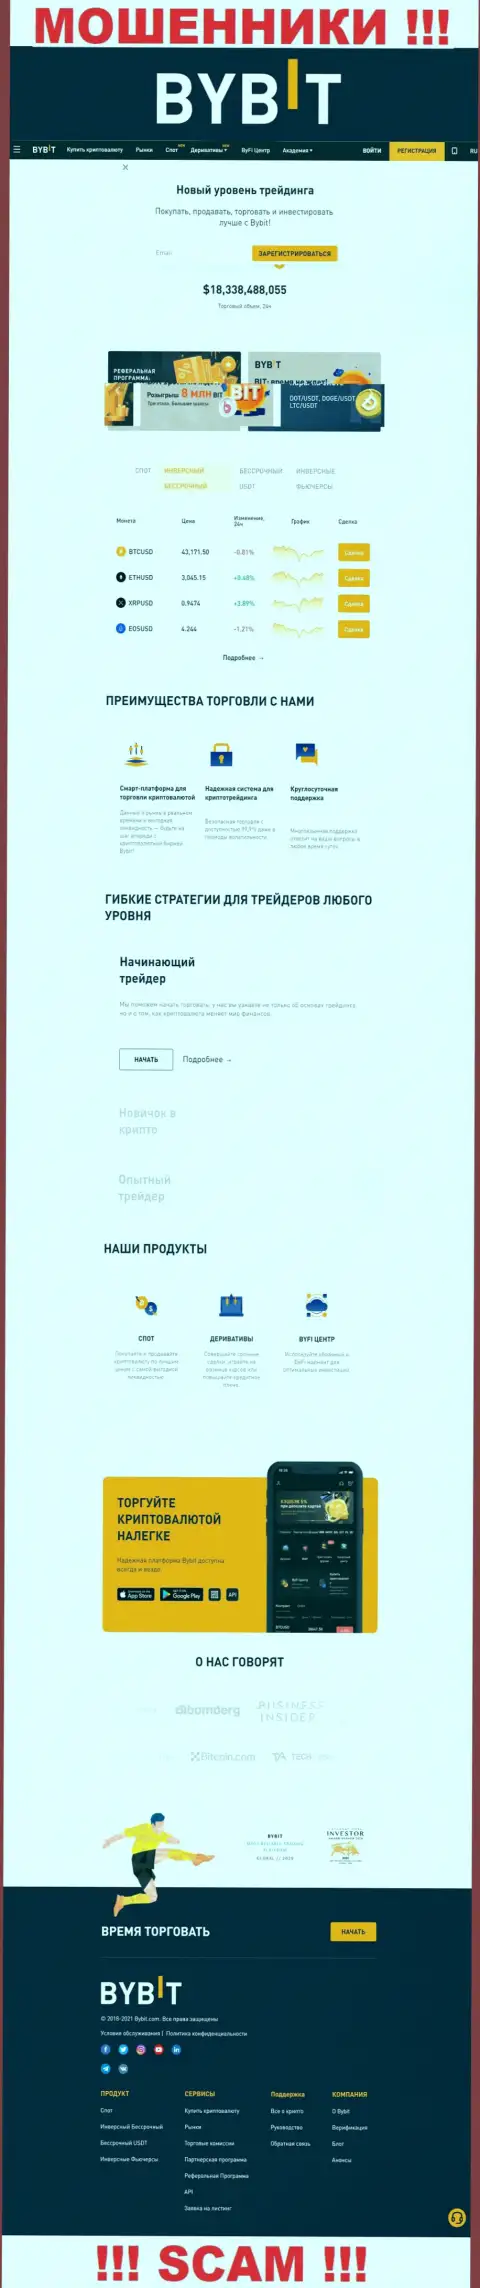 Основная страничка официального сайта мошенников ByBit Com